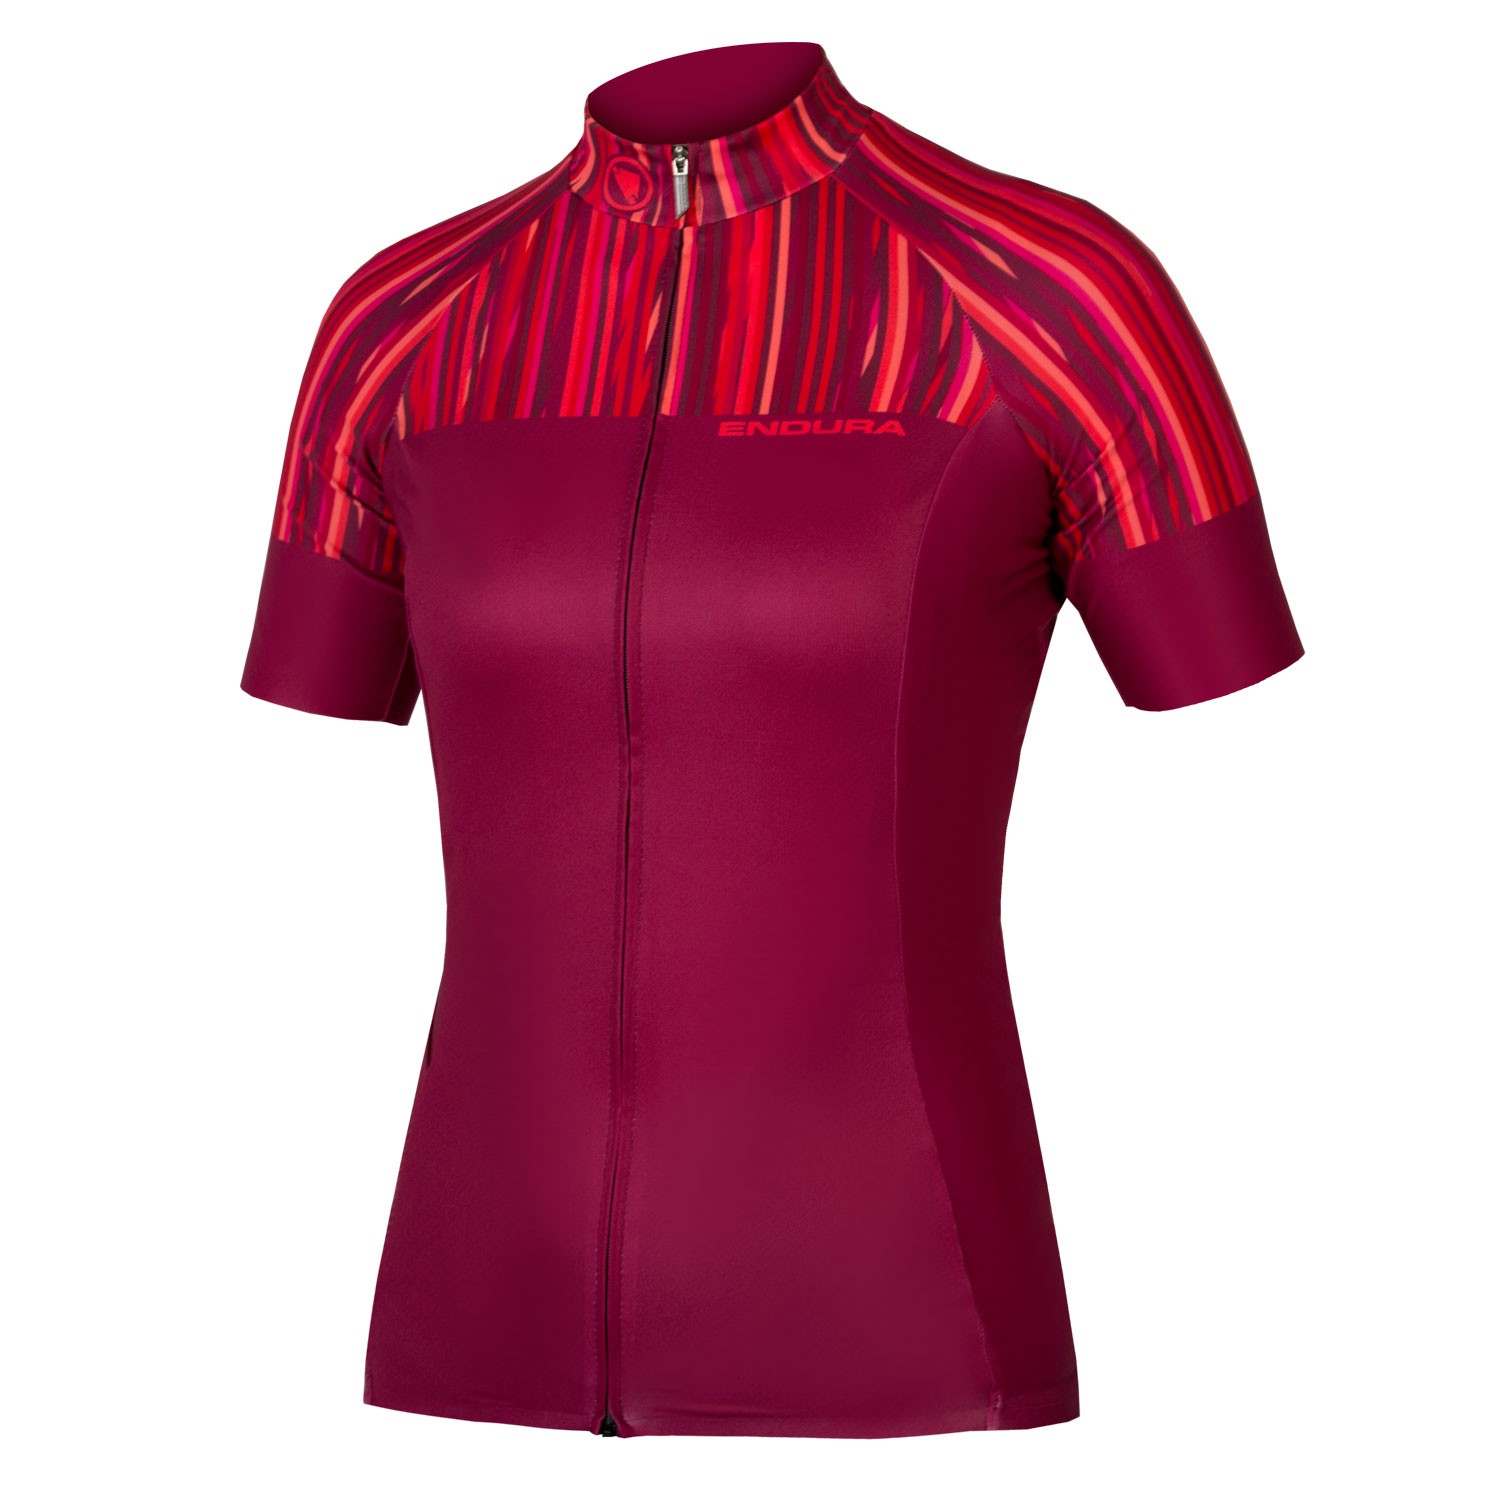 Endura pinstripe maillot de cyclisme manches courtes femme rouge